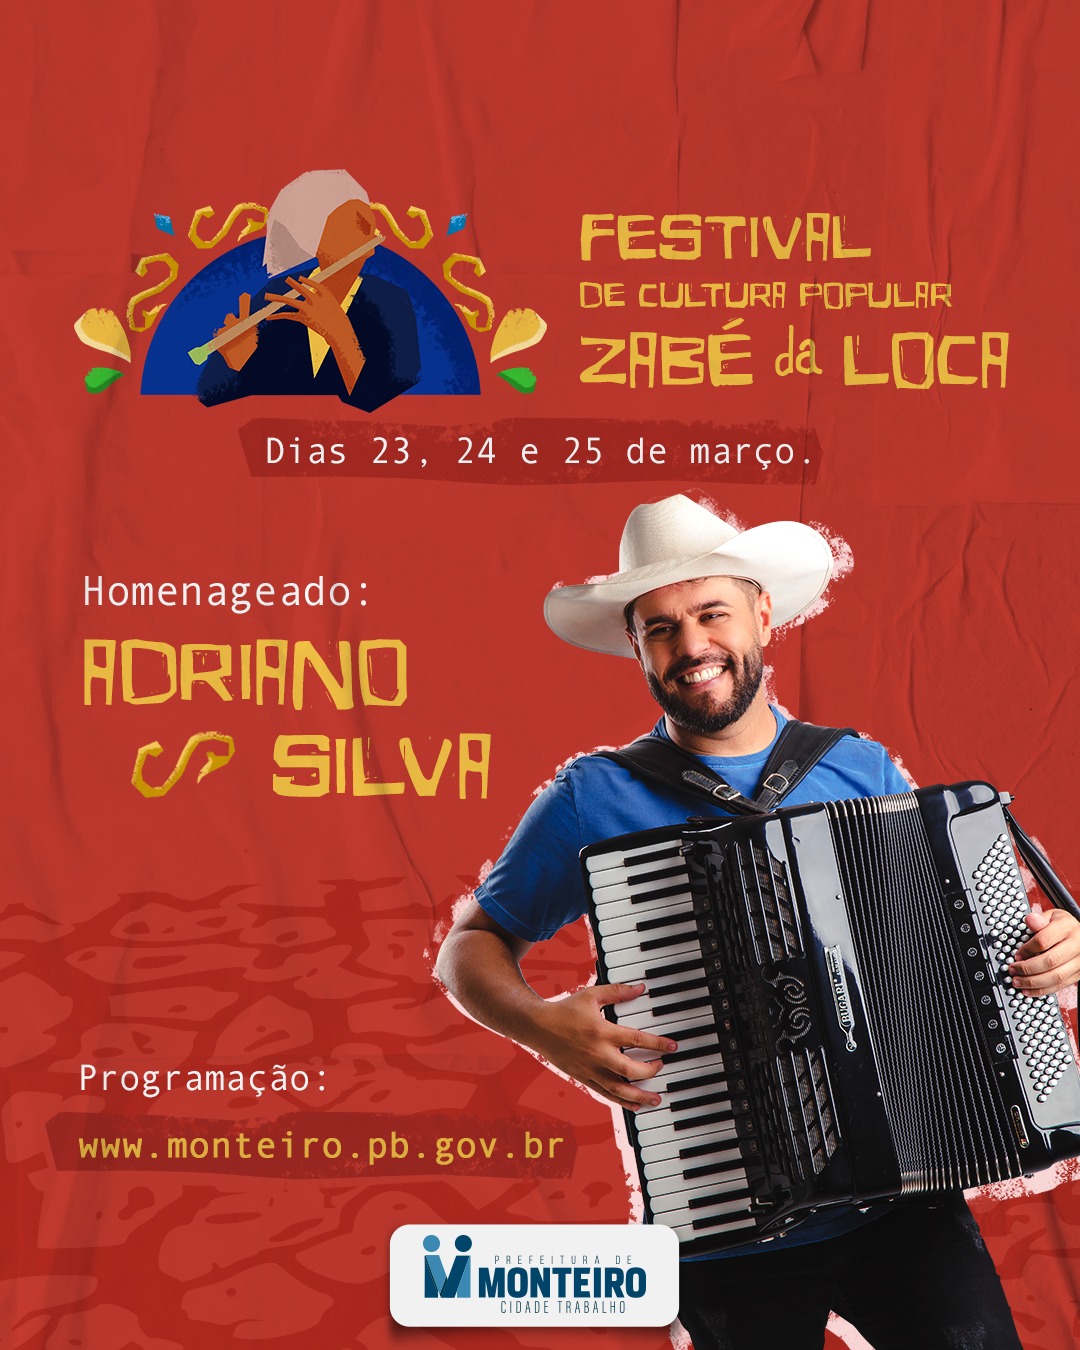 Festival-Zabe. ZABÉ VIVE!: Festival de Cultura Popular Zabé da Loca chega a sua 12ª edição